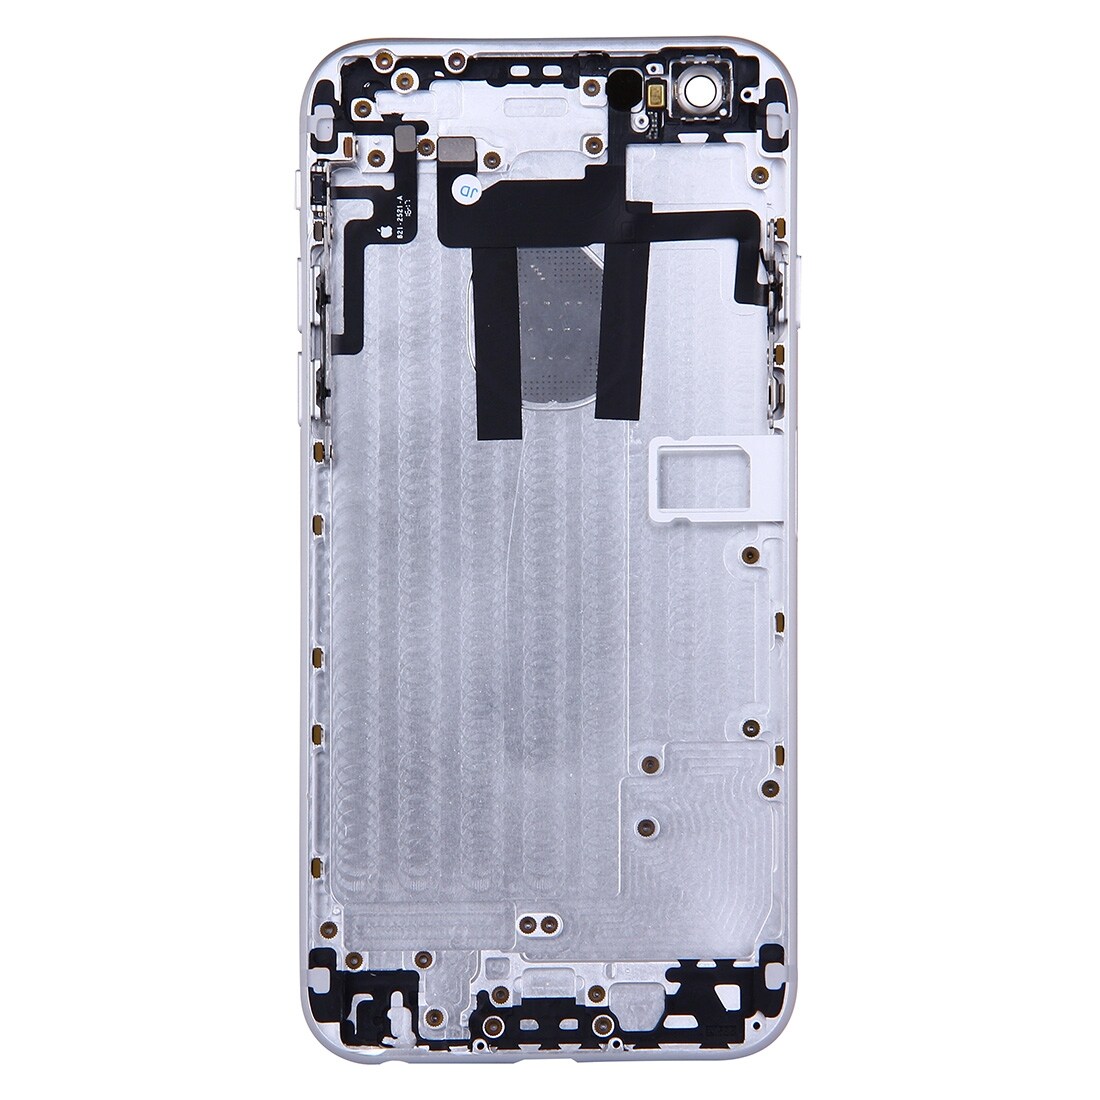 Komplett skalbyte iPhone 6 - Silver